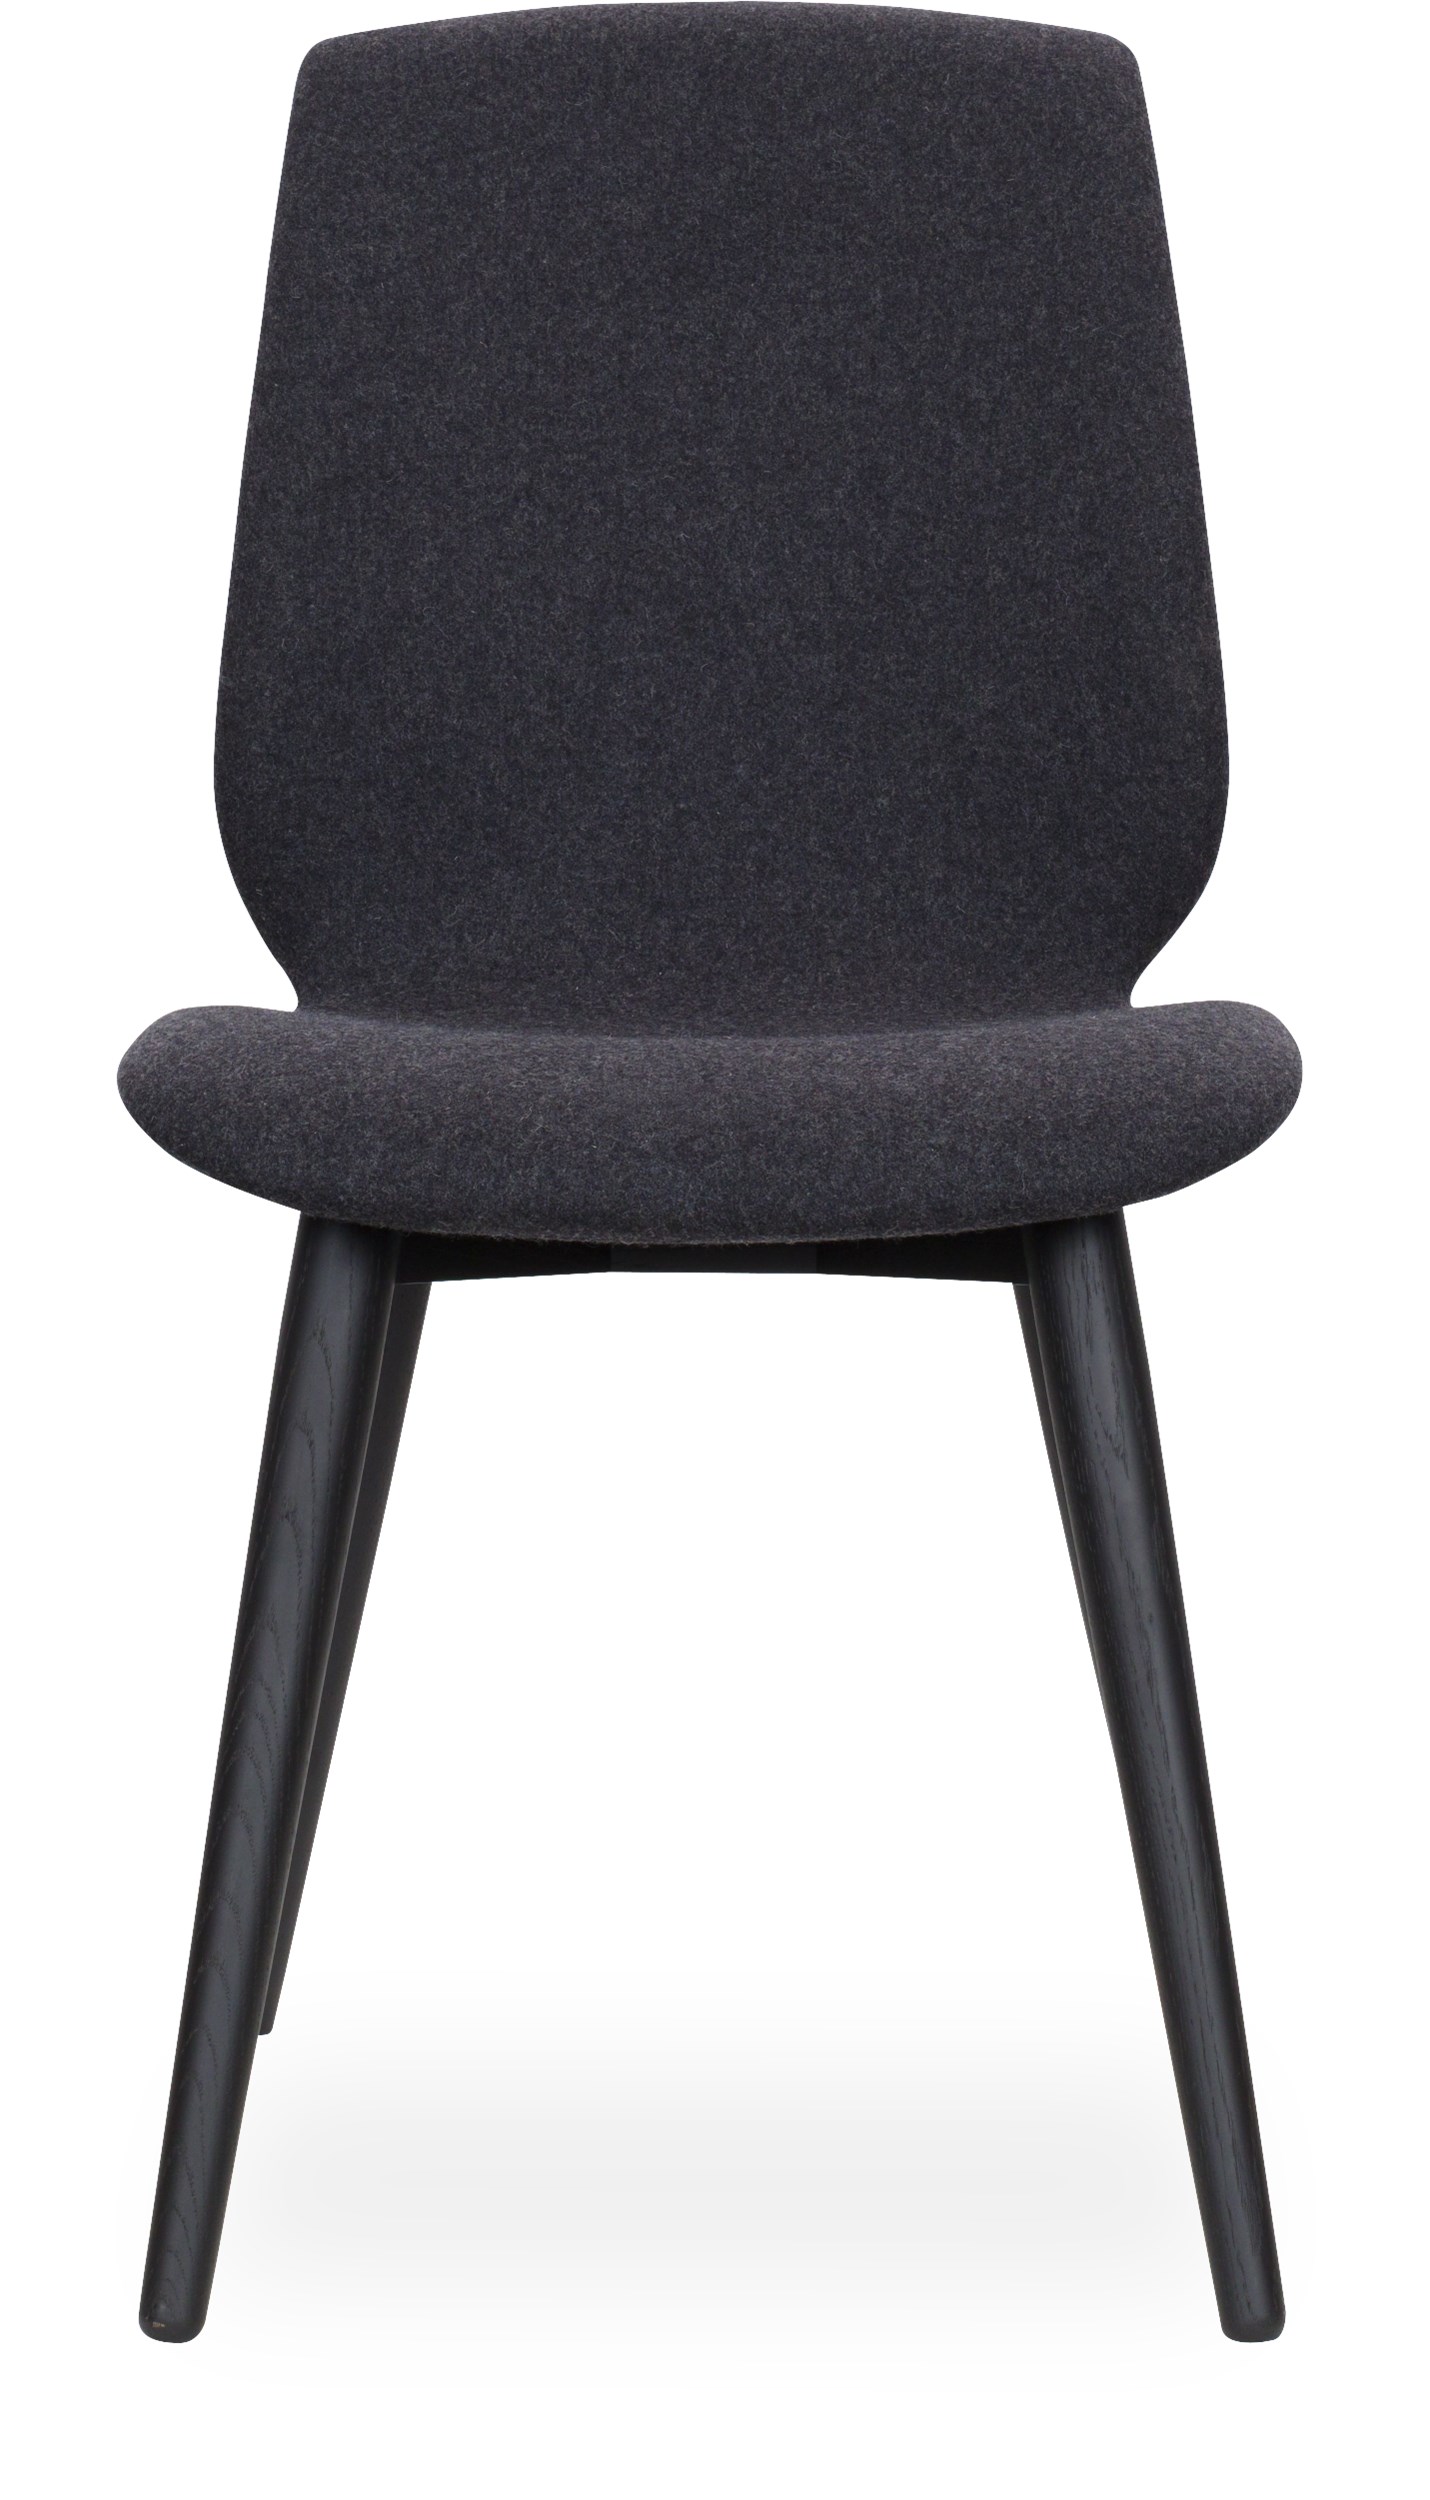 Share XL Curve matstol - Sits i 24 Dusty charcoal filt och curveben i svartbetsad mattlackad ek